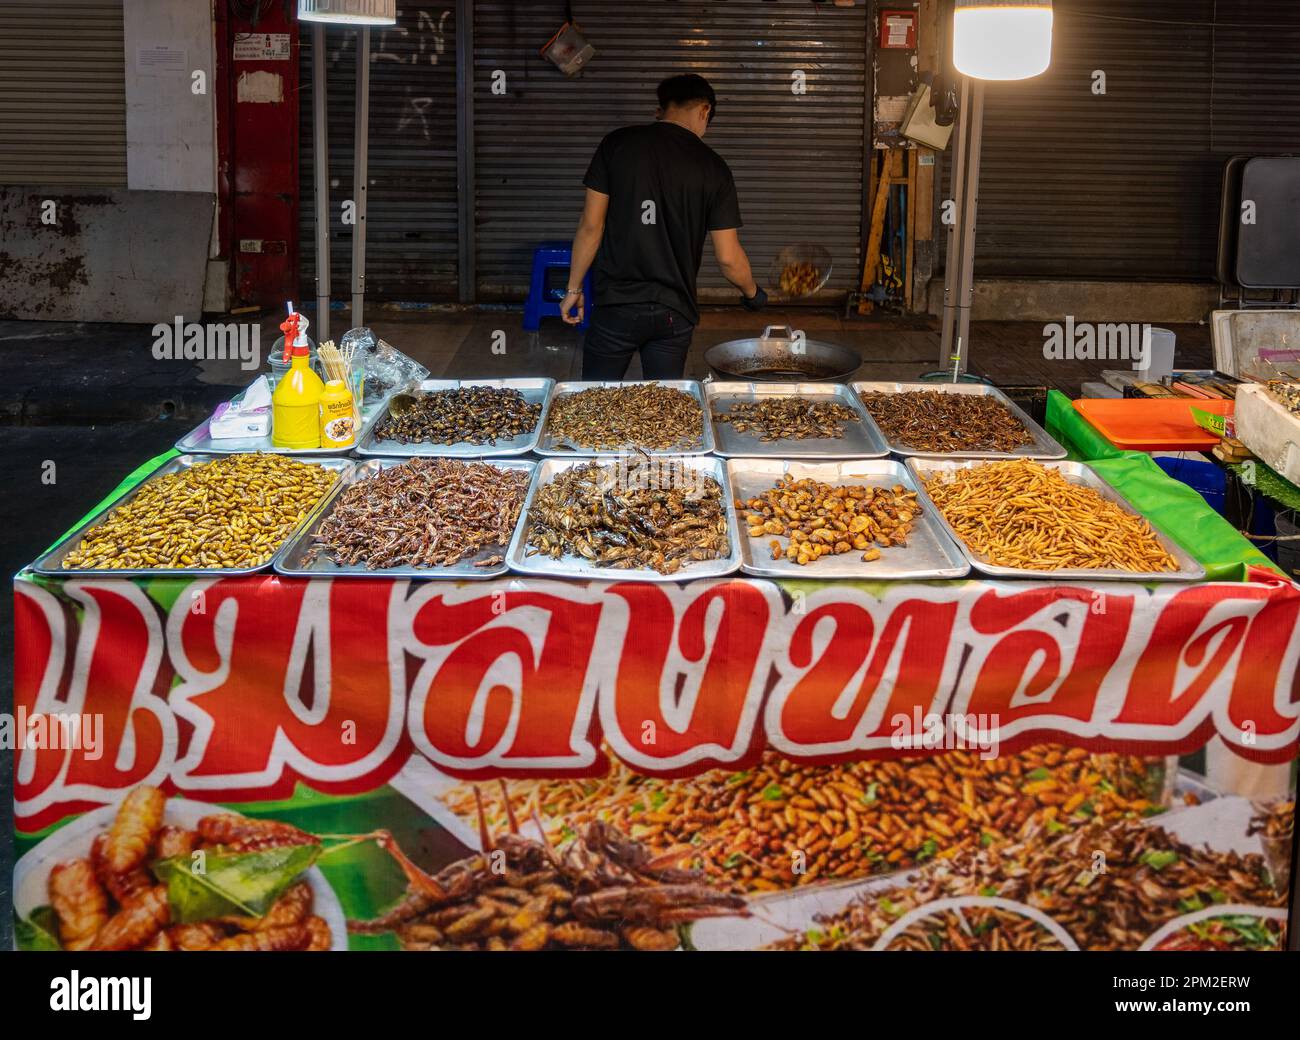 Auf einem Straßenmarkt in der Innenstadt von Bangkok, Thailand, werden verschiedene Insekten zum Essen serviert. Stockfoto